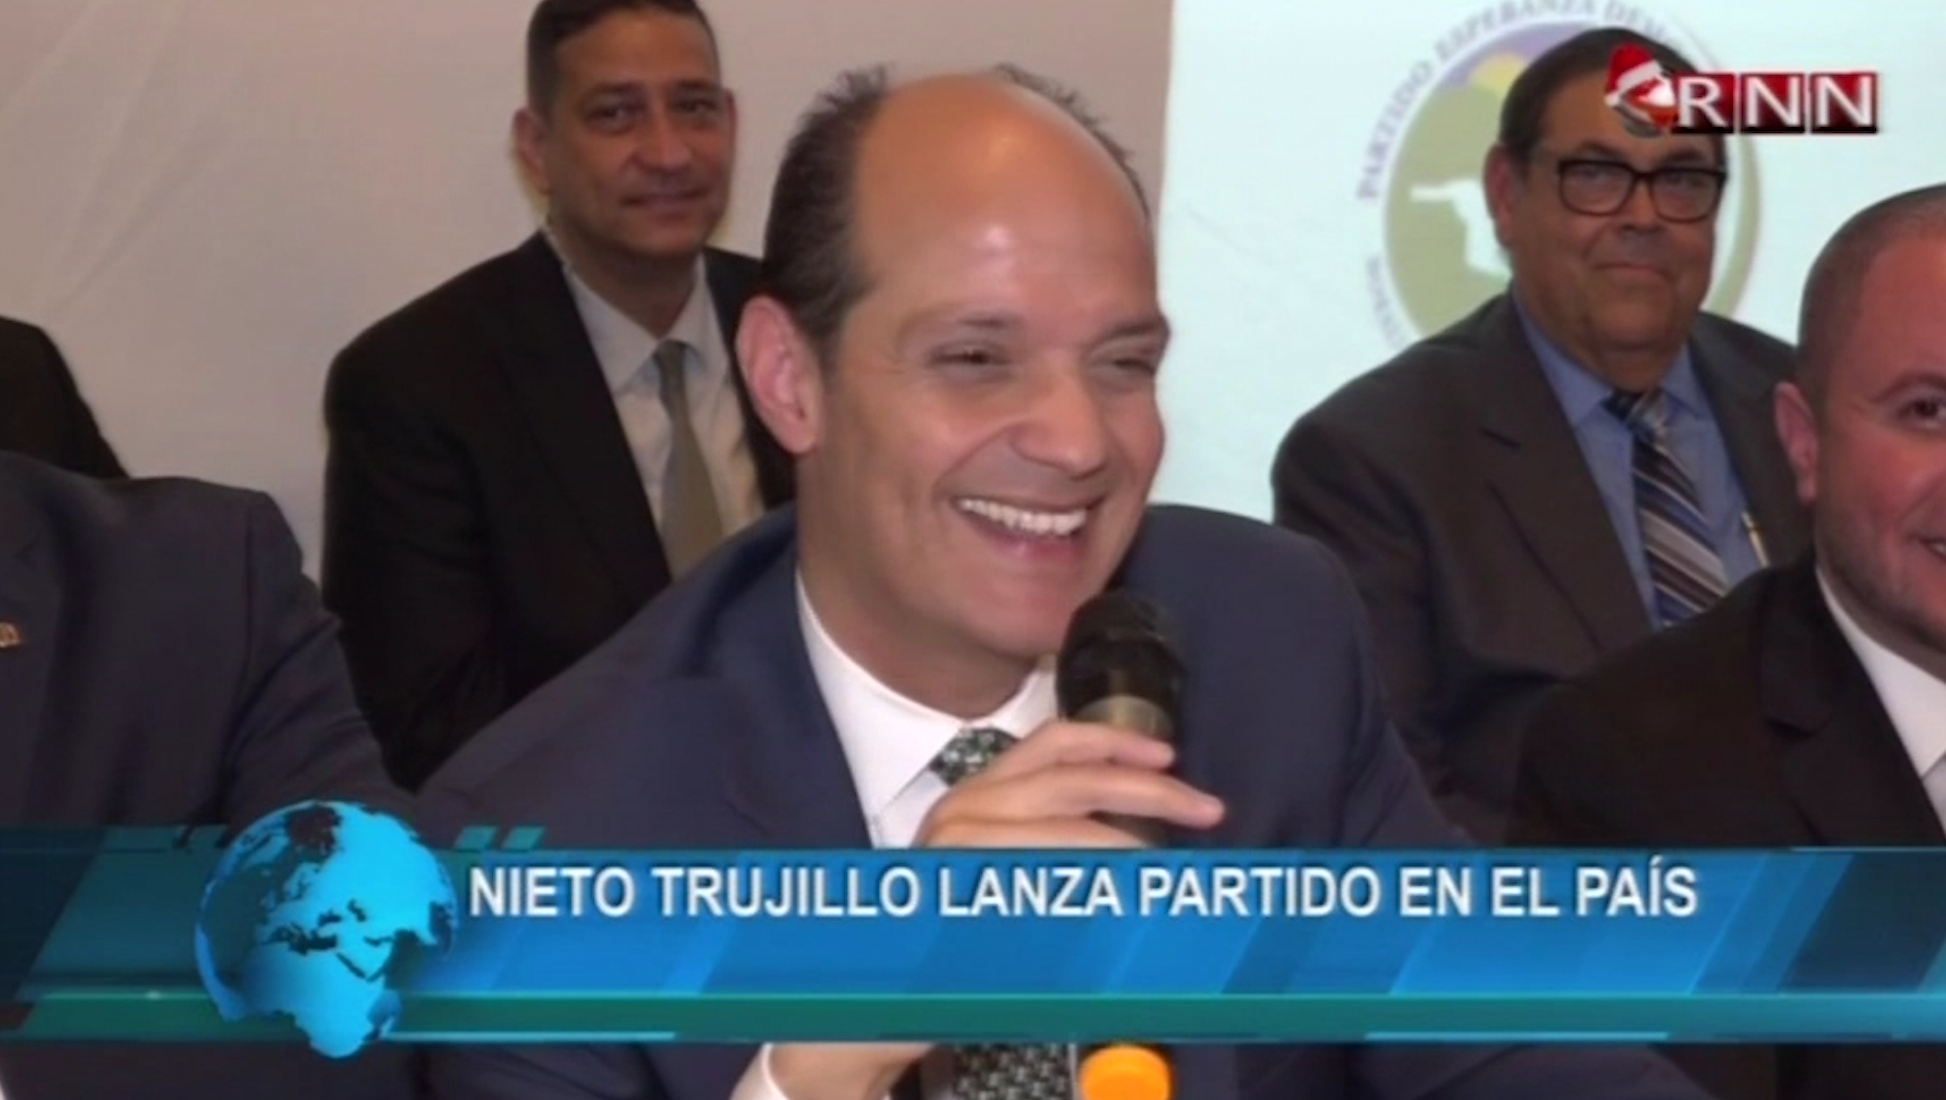 Nieto De Trujillo Lanza Partido Para Su Candidatura En El País